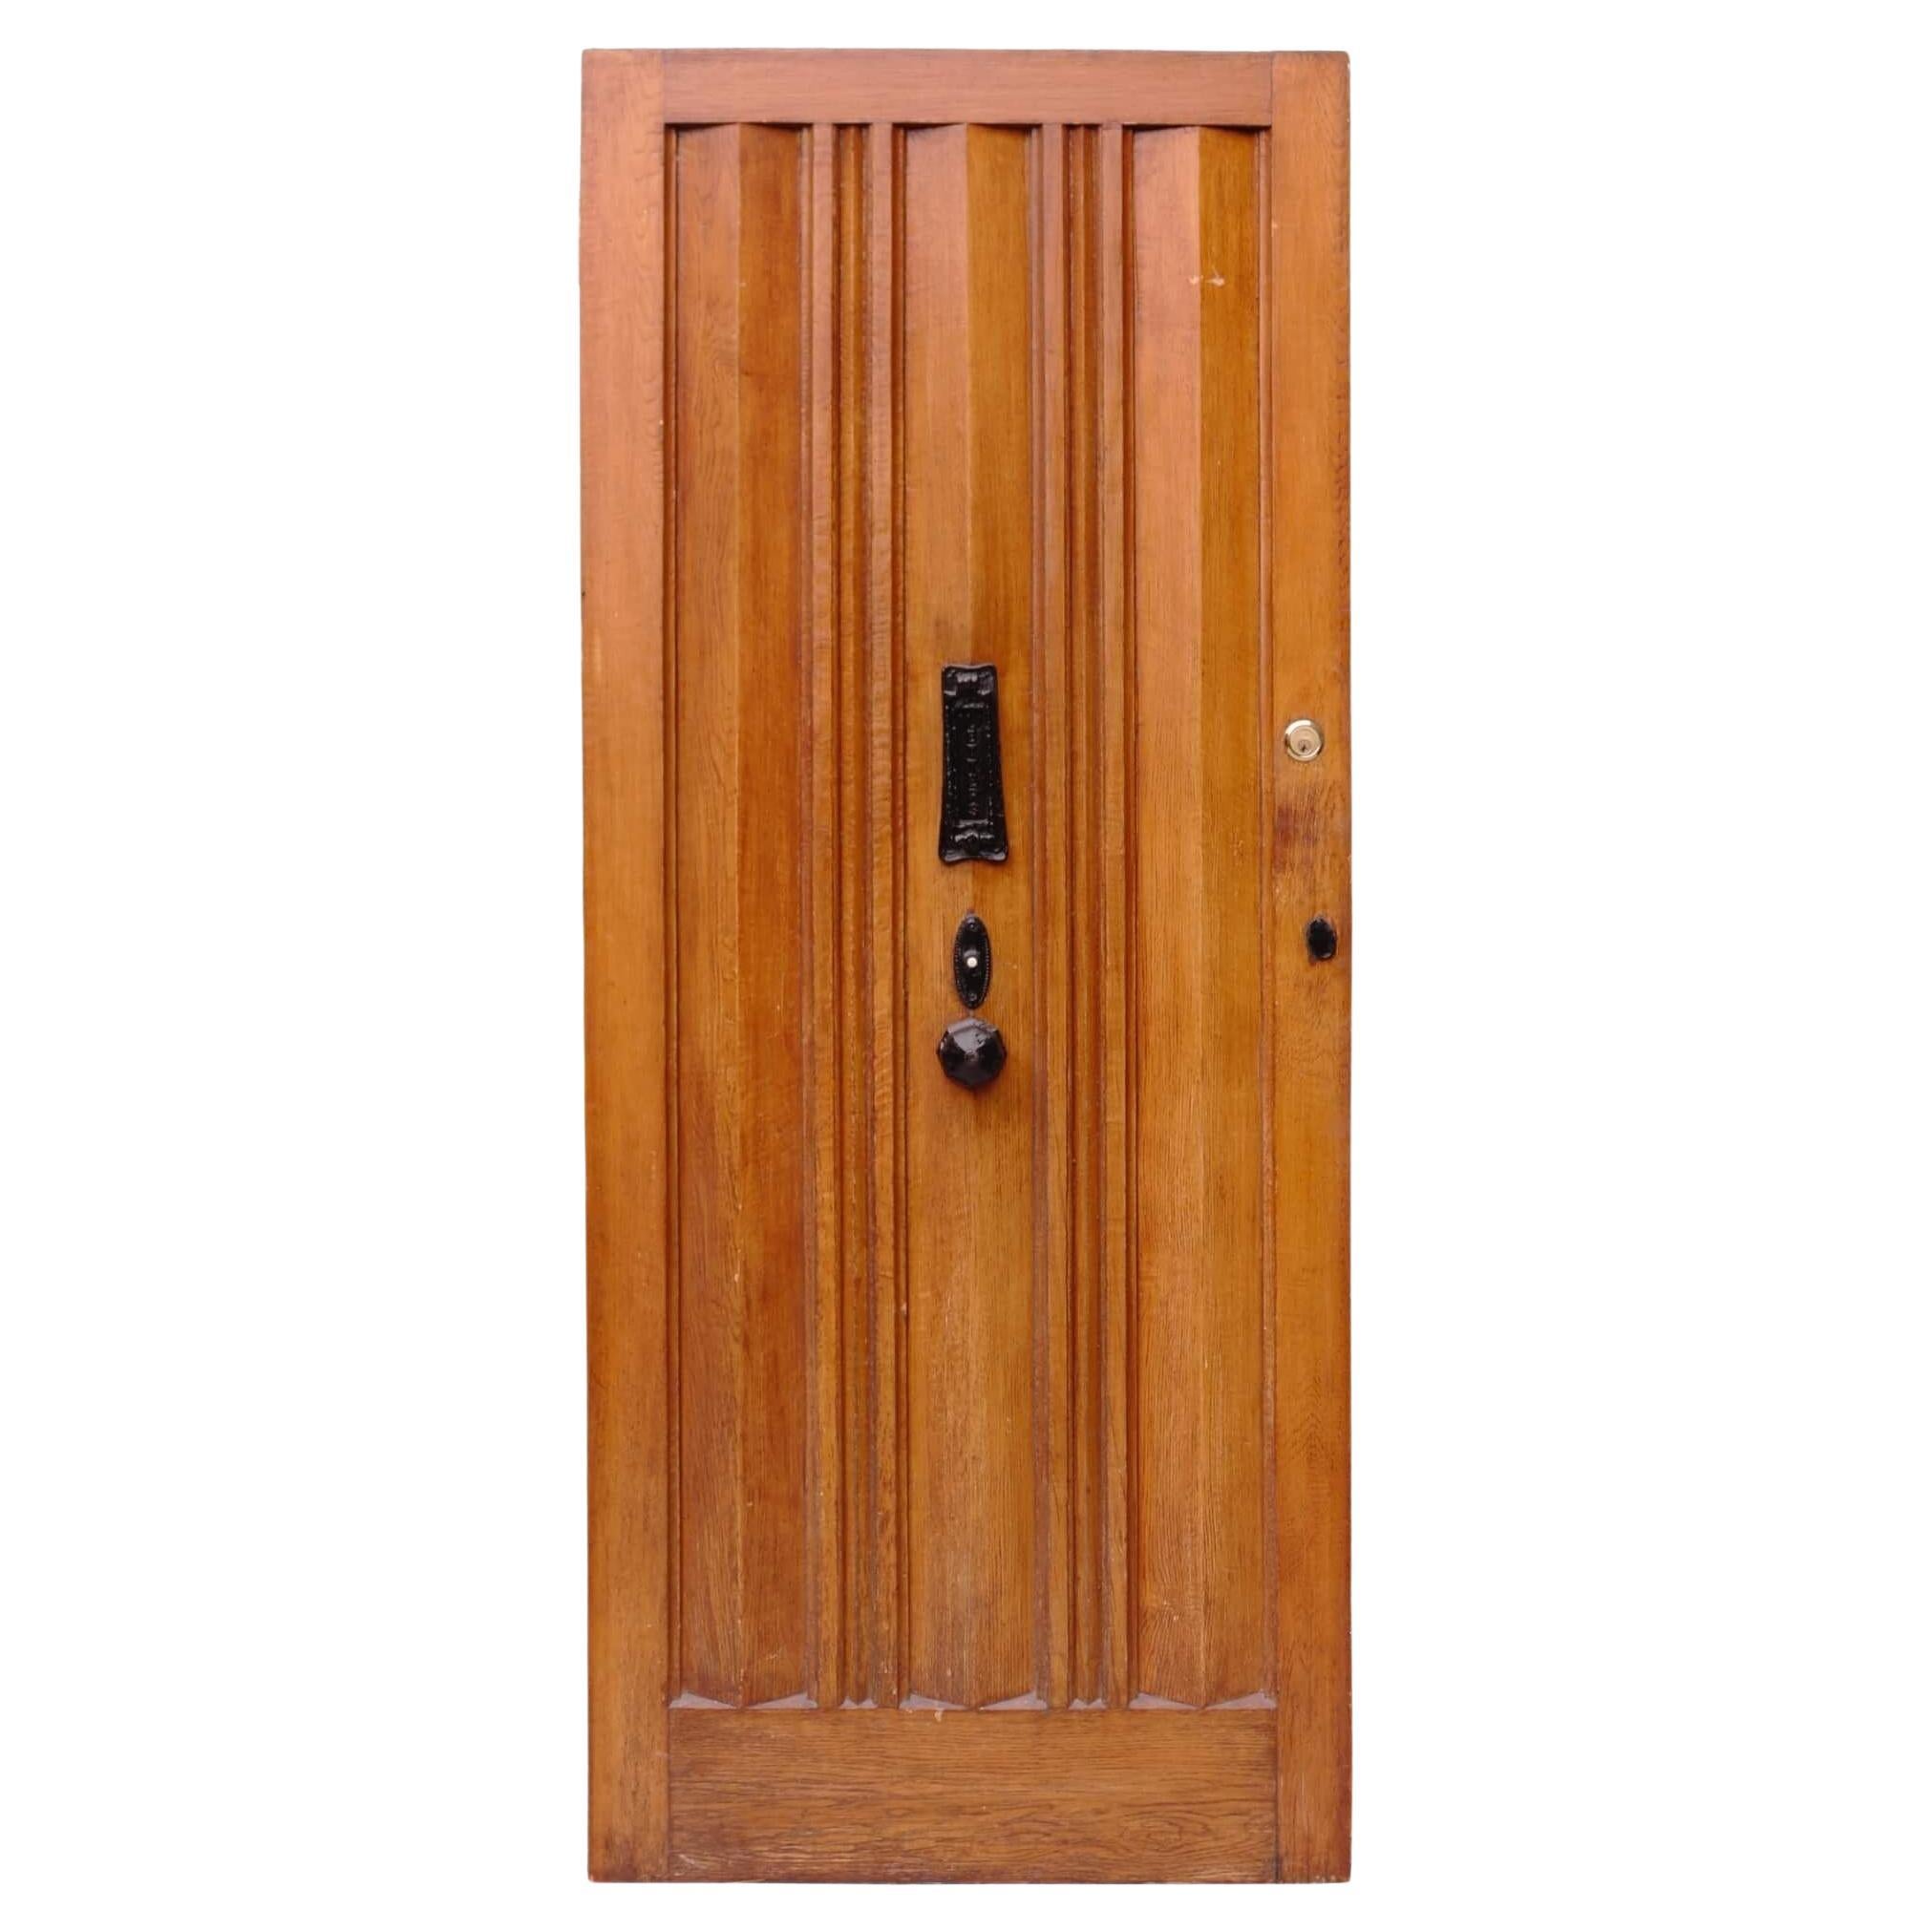 Reclaimed 1930s Oak Front Door with Bell For Sale